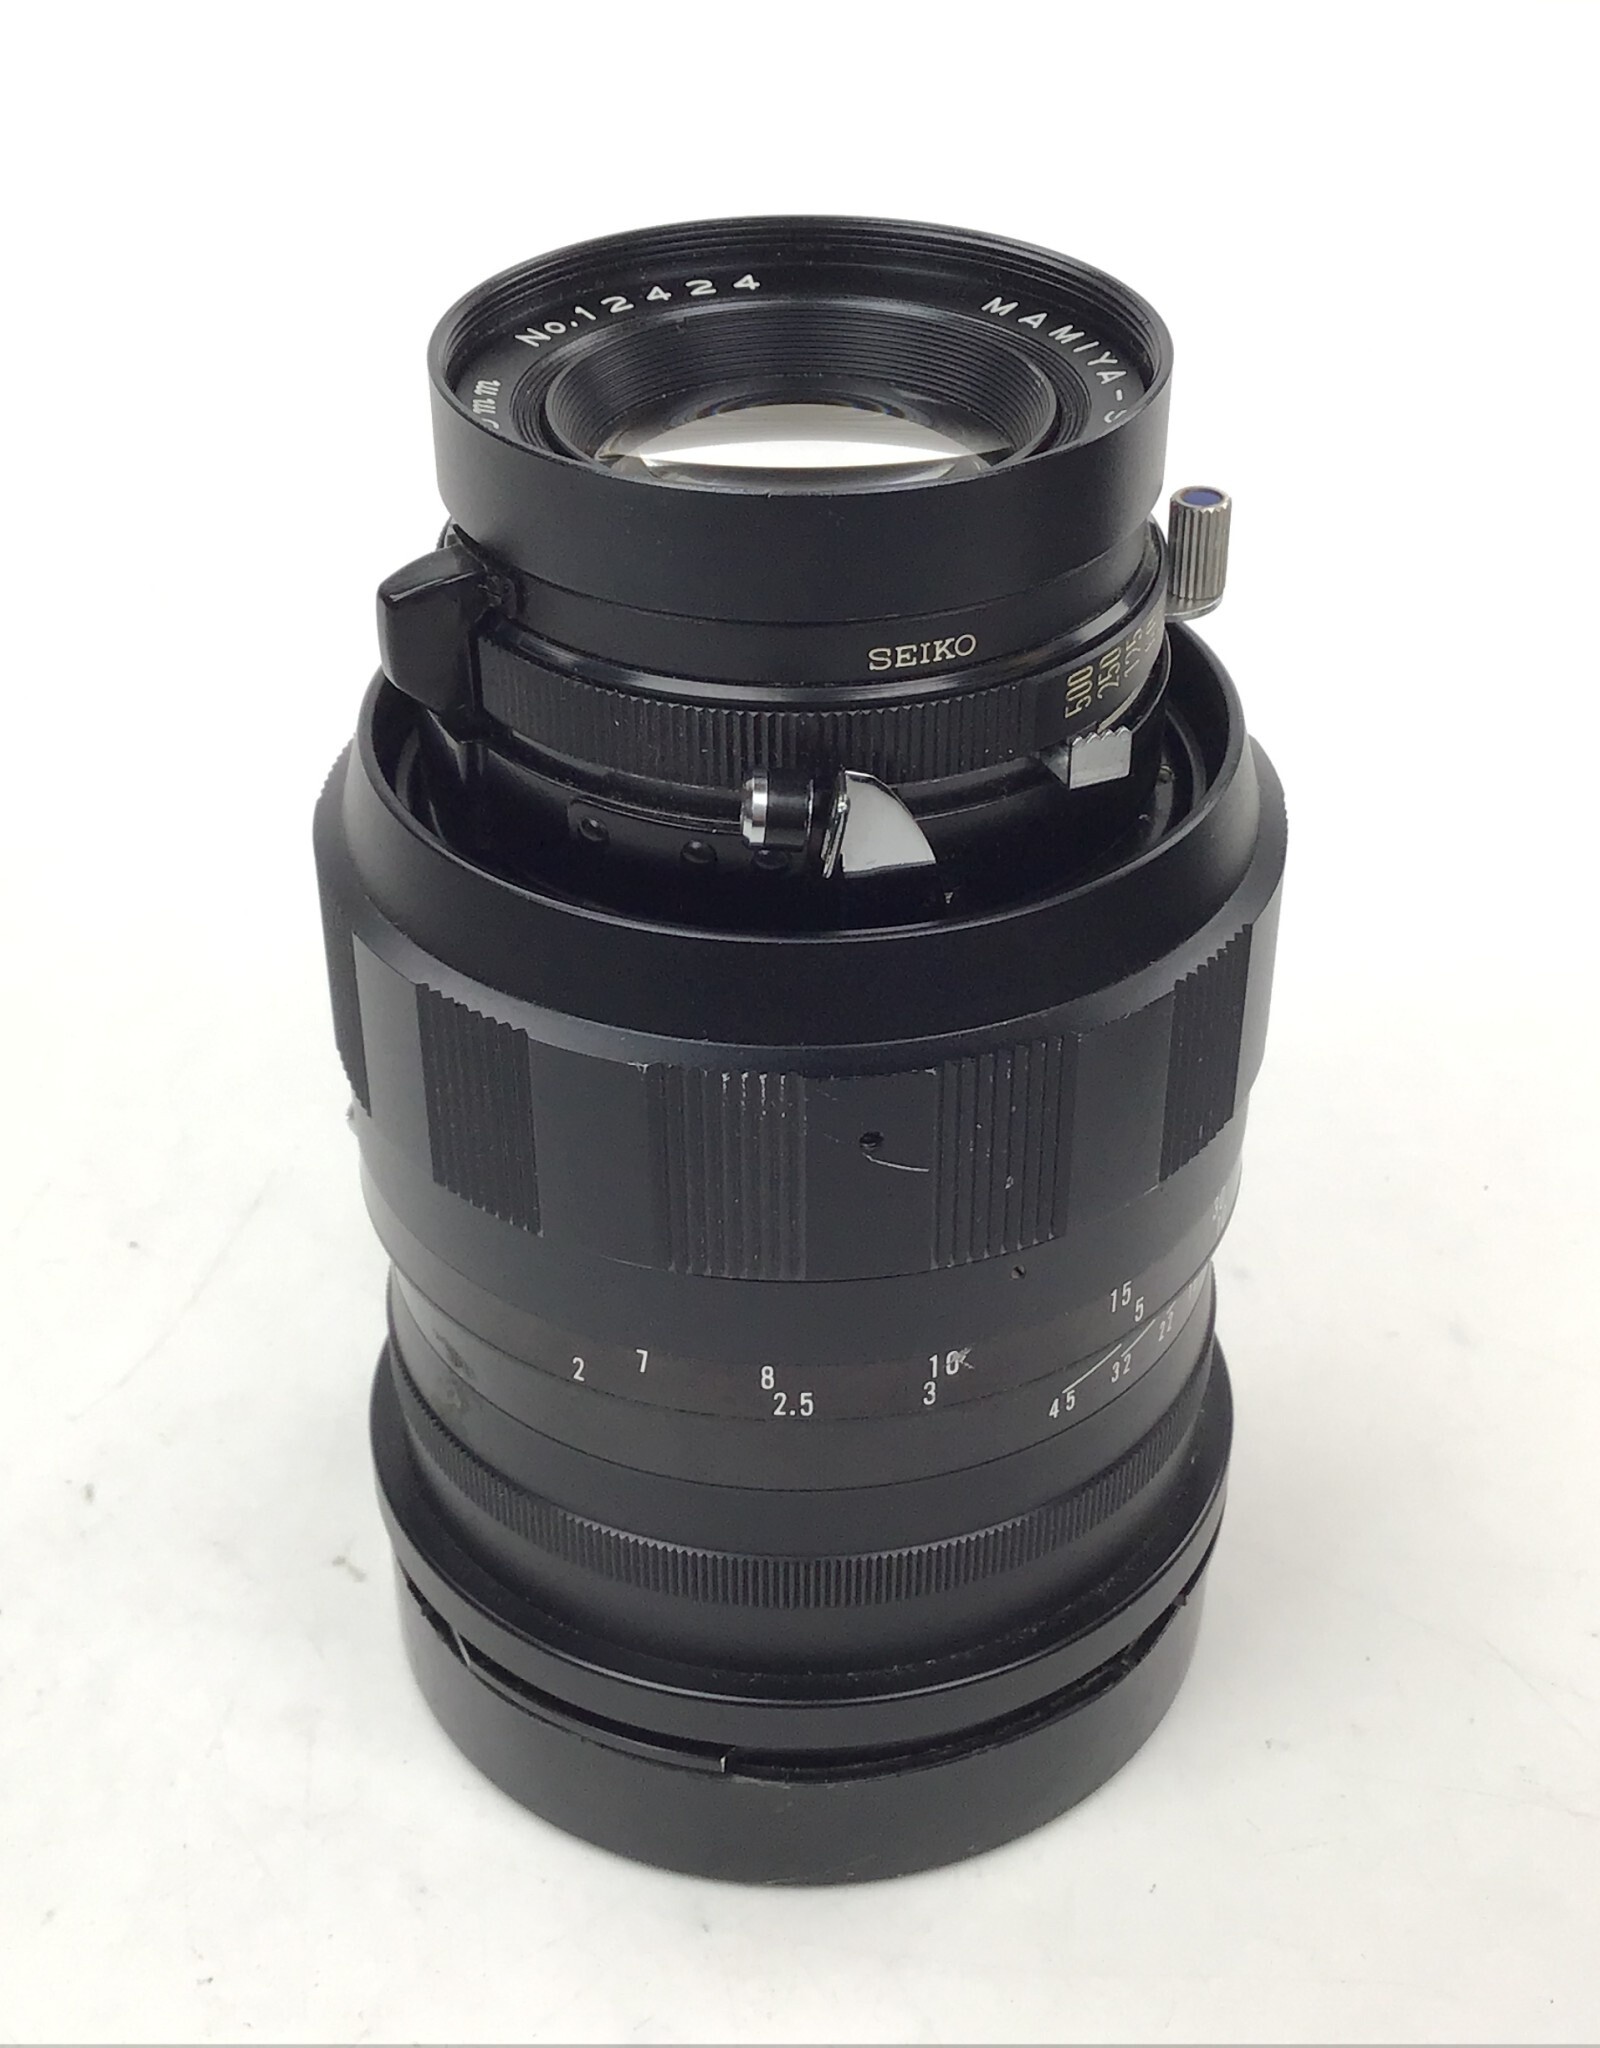 MAMIYA Mamiya Sekor 150mm f5.6 Lens for Universal Press Used Fair